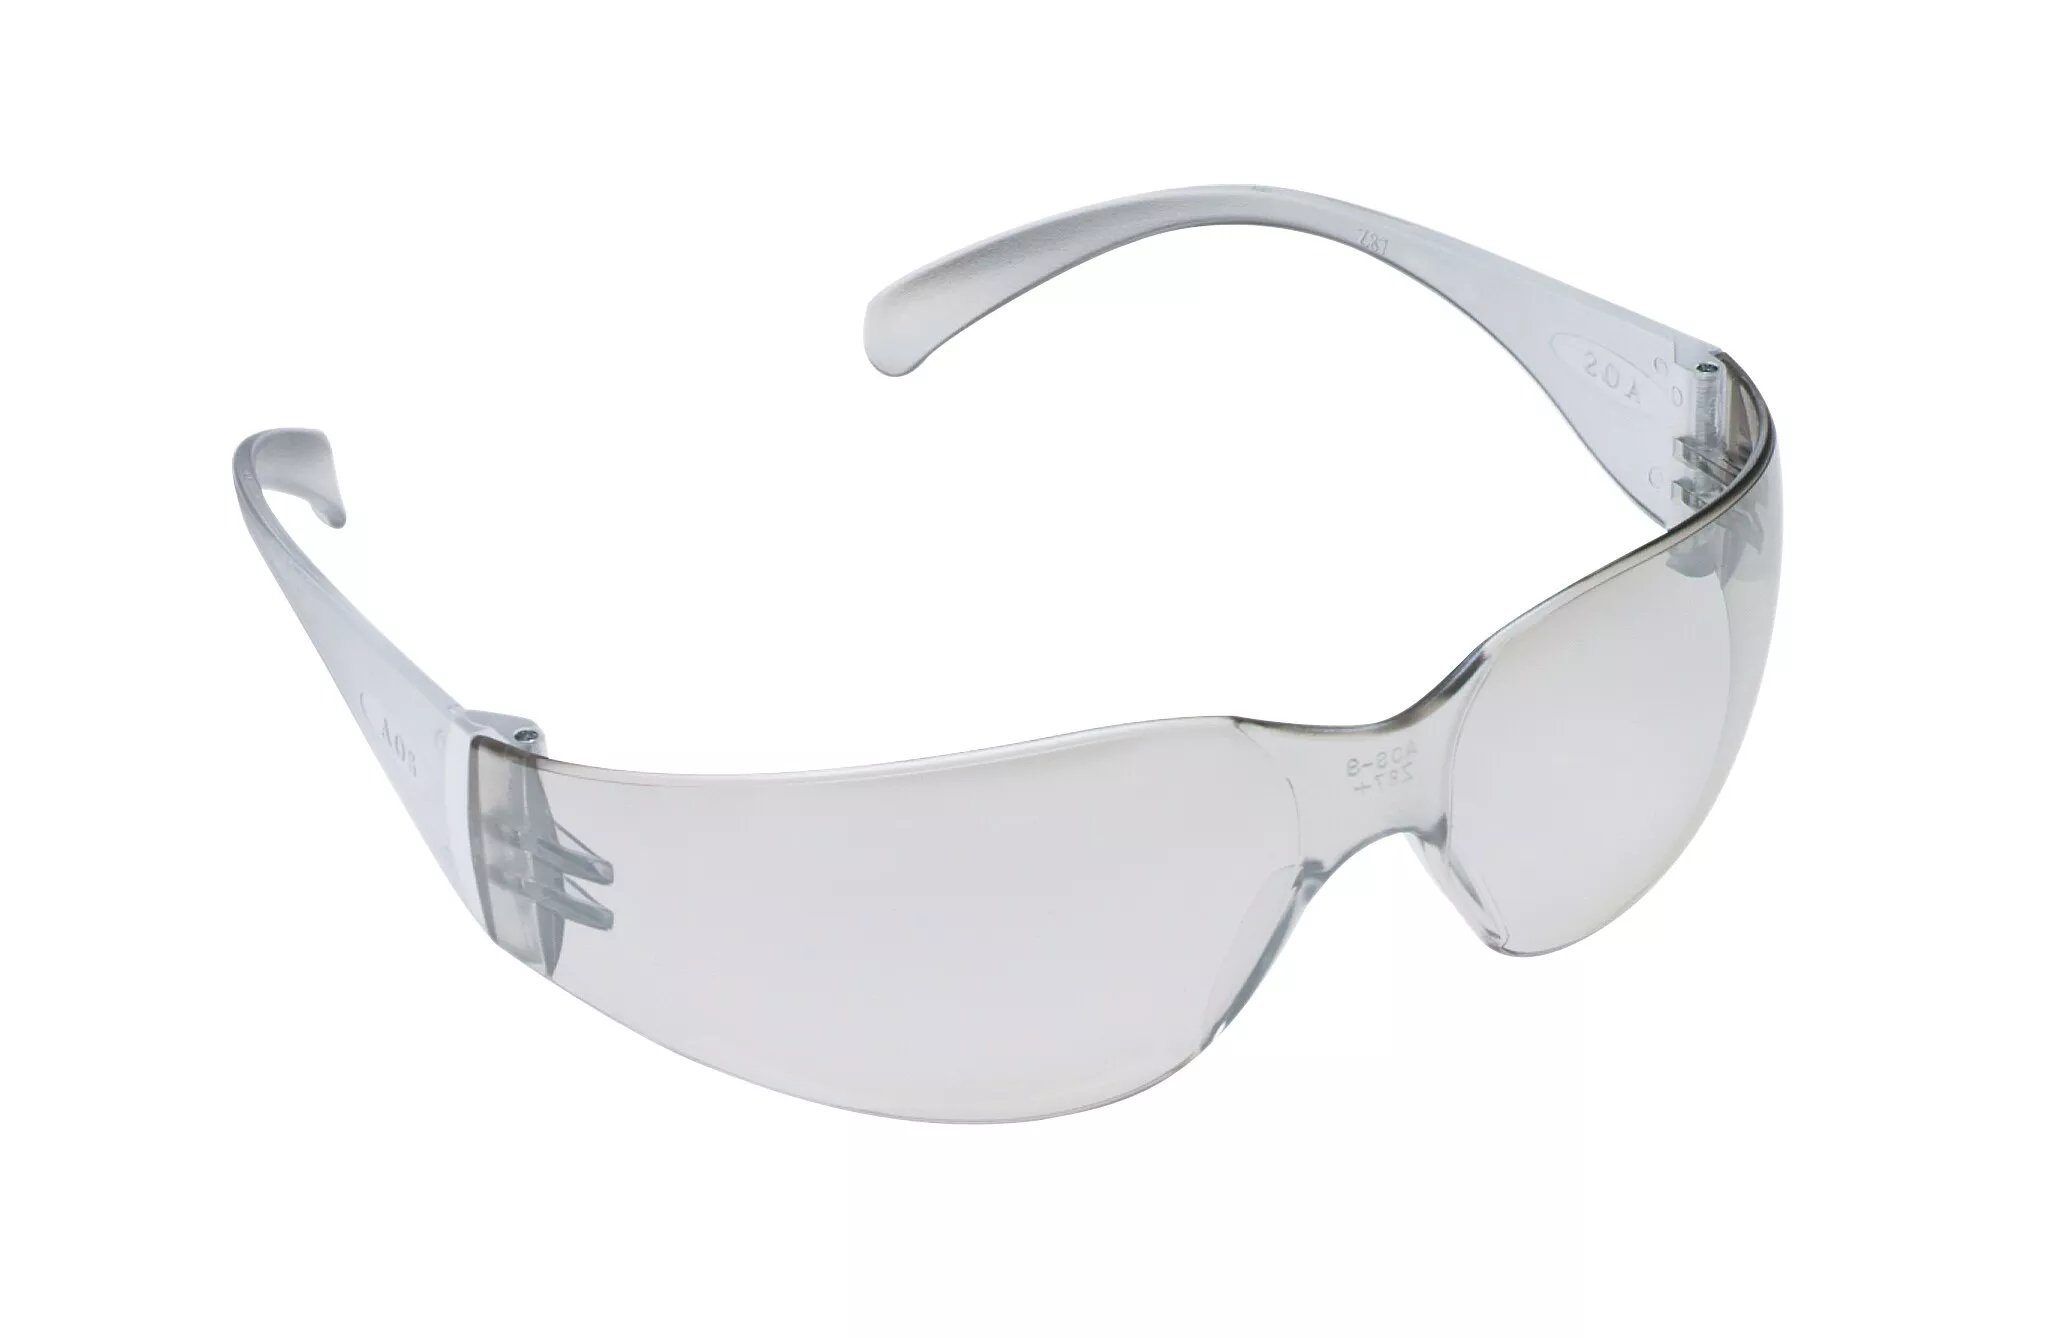 3M™ Virtua™ Protective Eyewear 11328-00000-20 I/O Hard Coat Lens, Clear
Temple 20 EA/Case